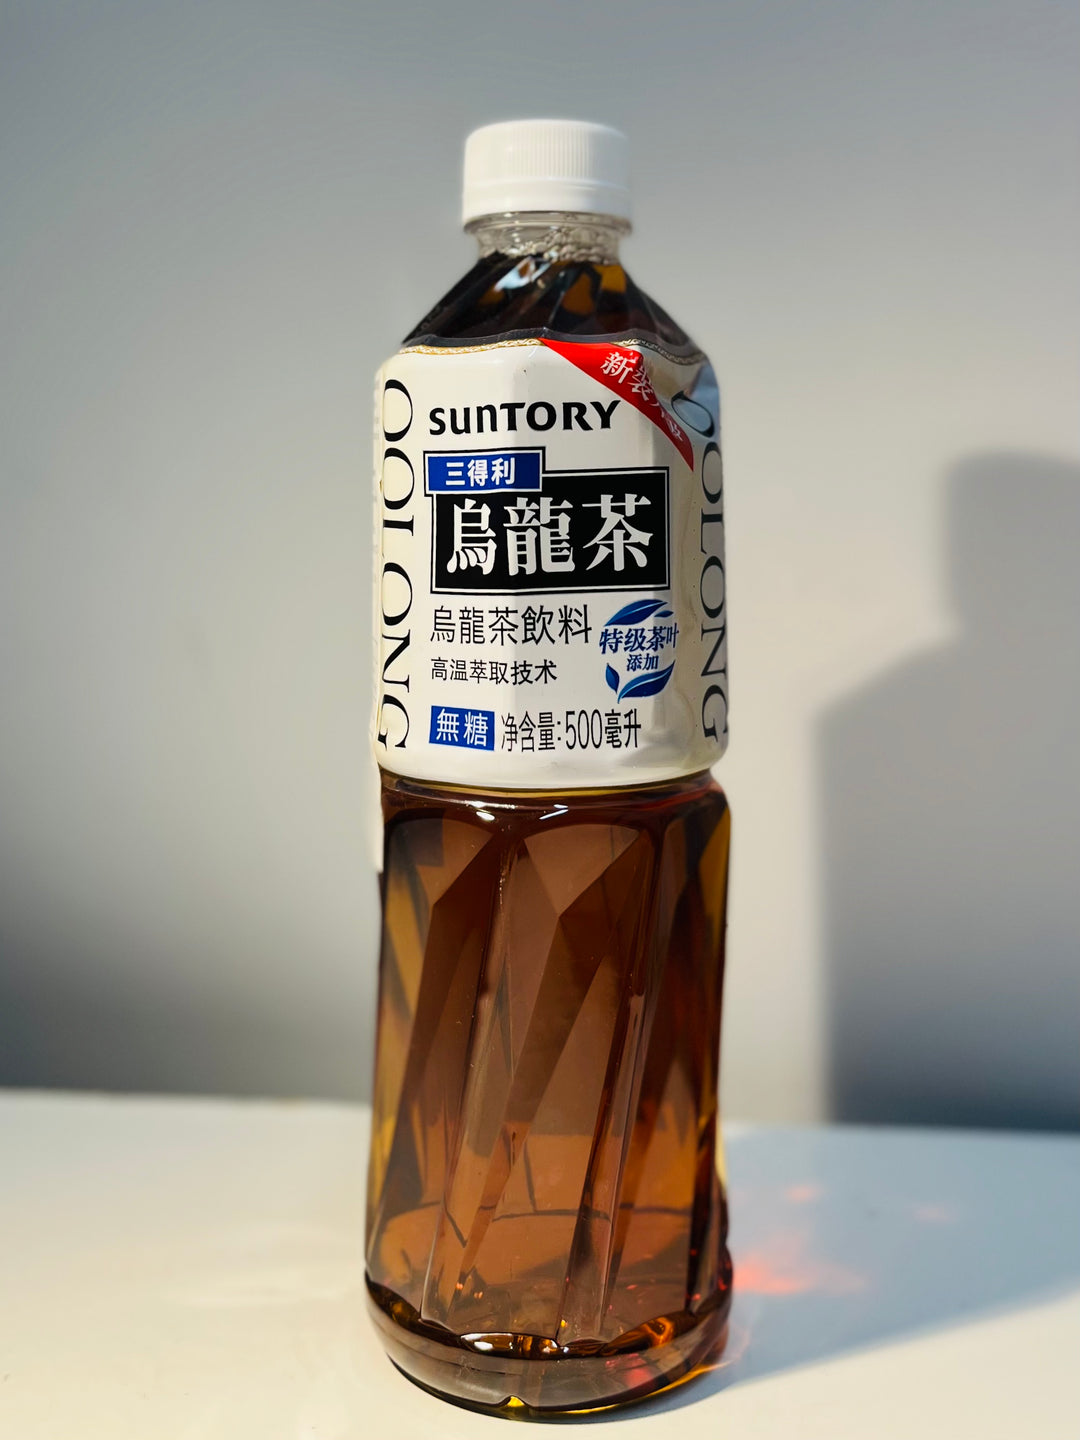 三得利无糖乌龙茶500ml Suntory Oolong Tea Sugar Free